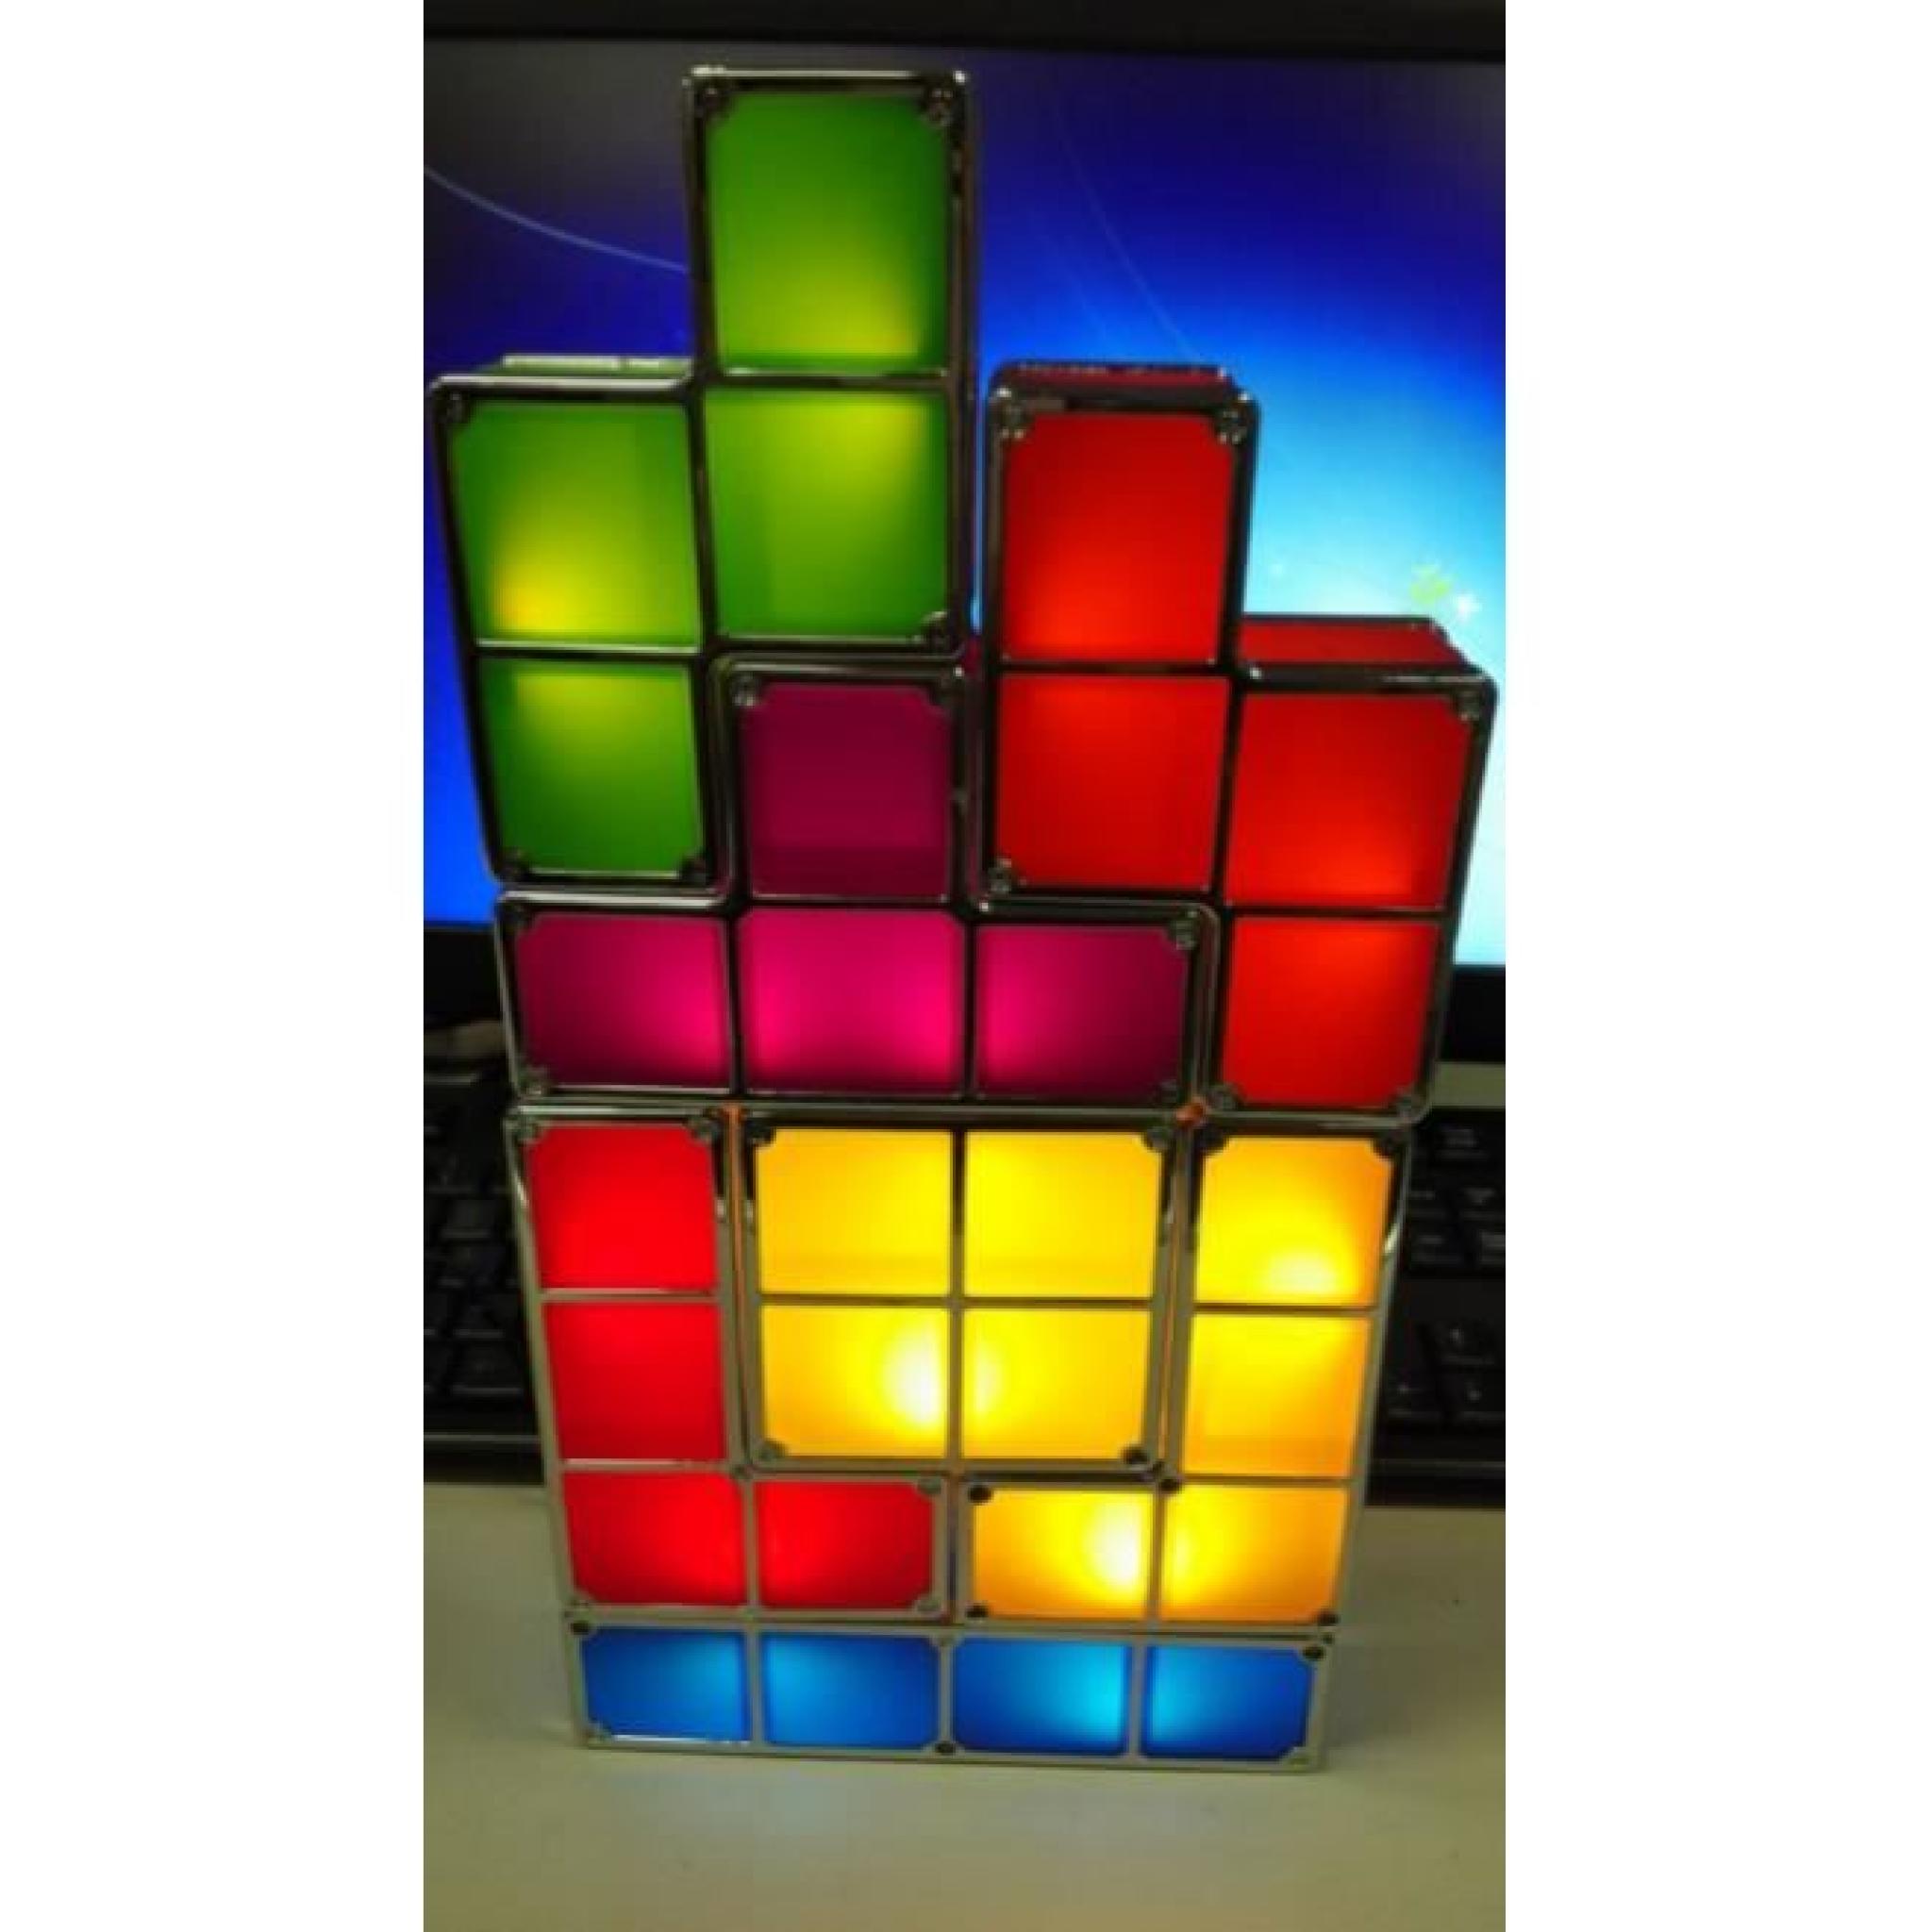 Lampe tetris design, cadeau design pas cher